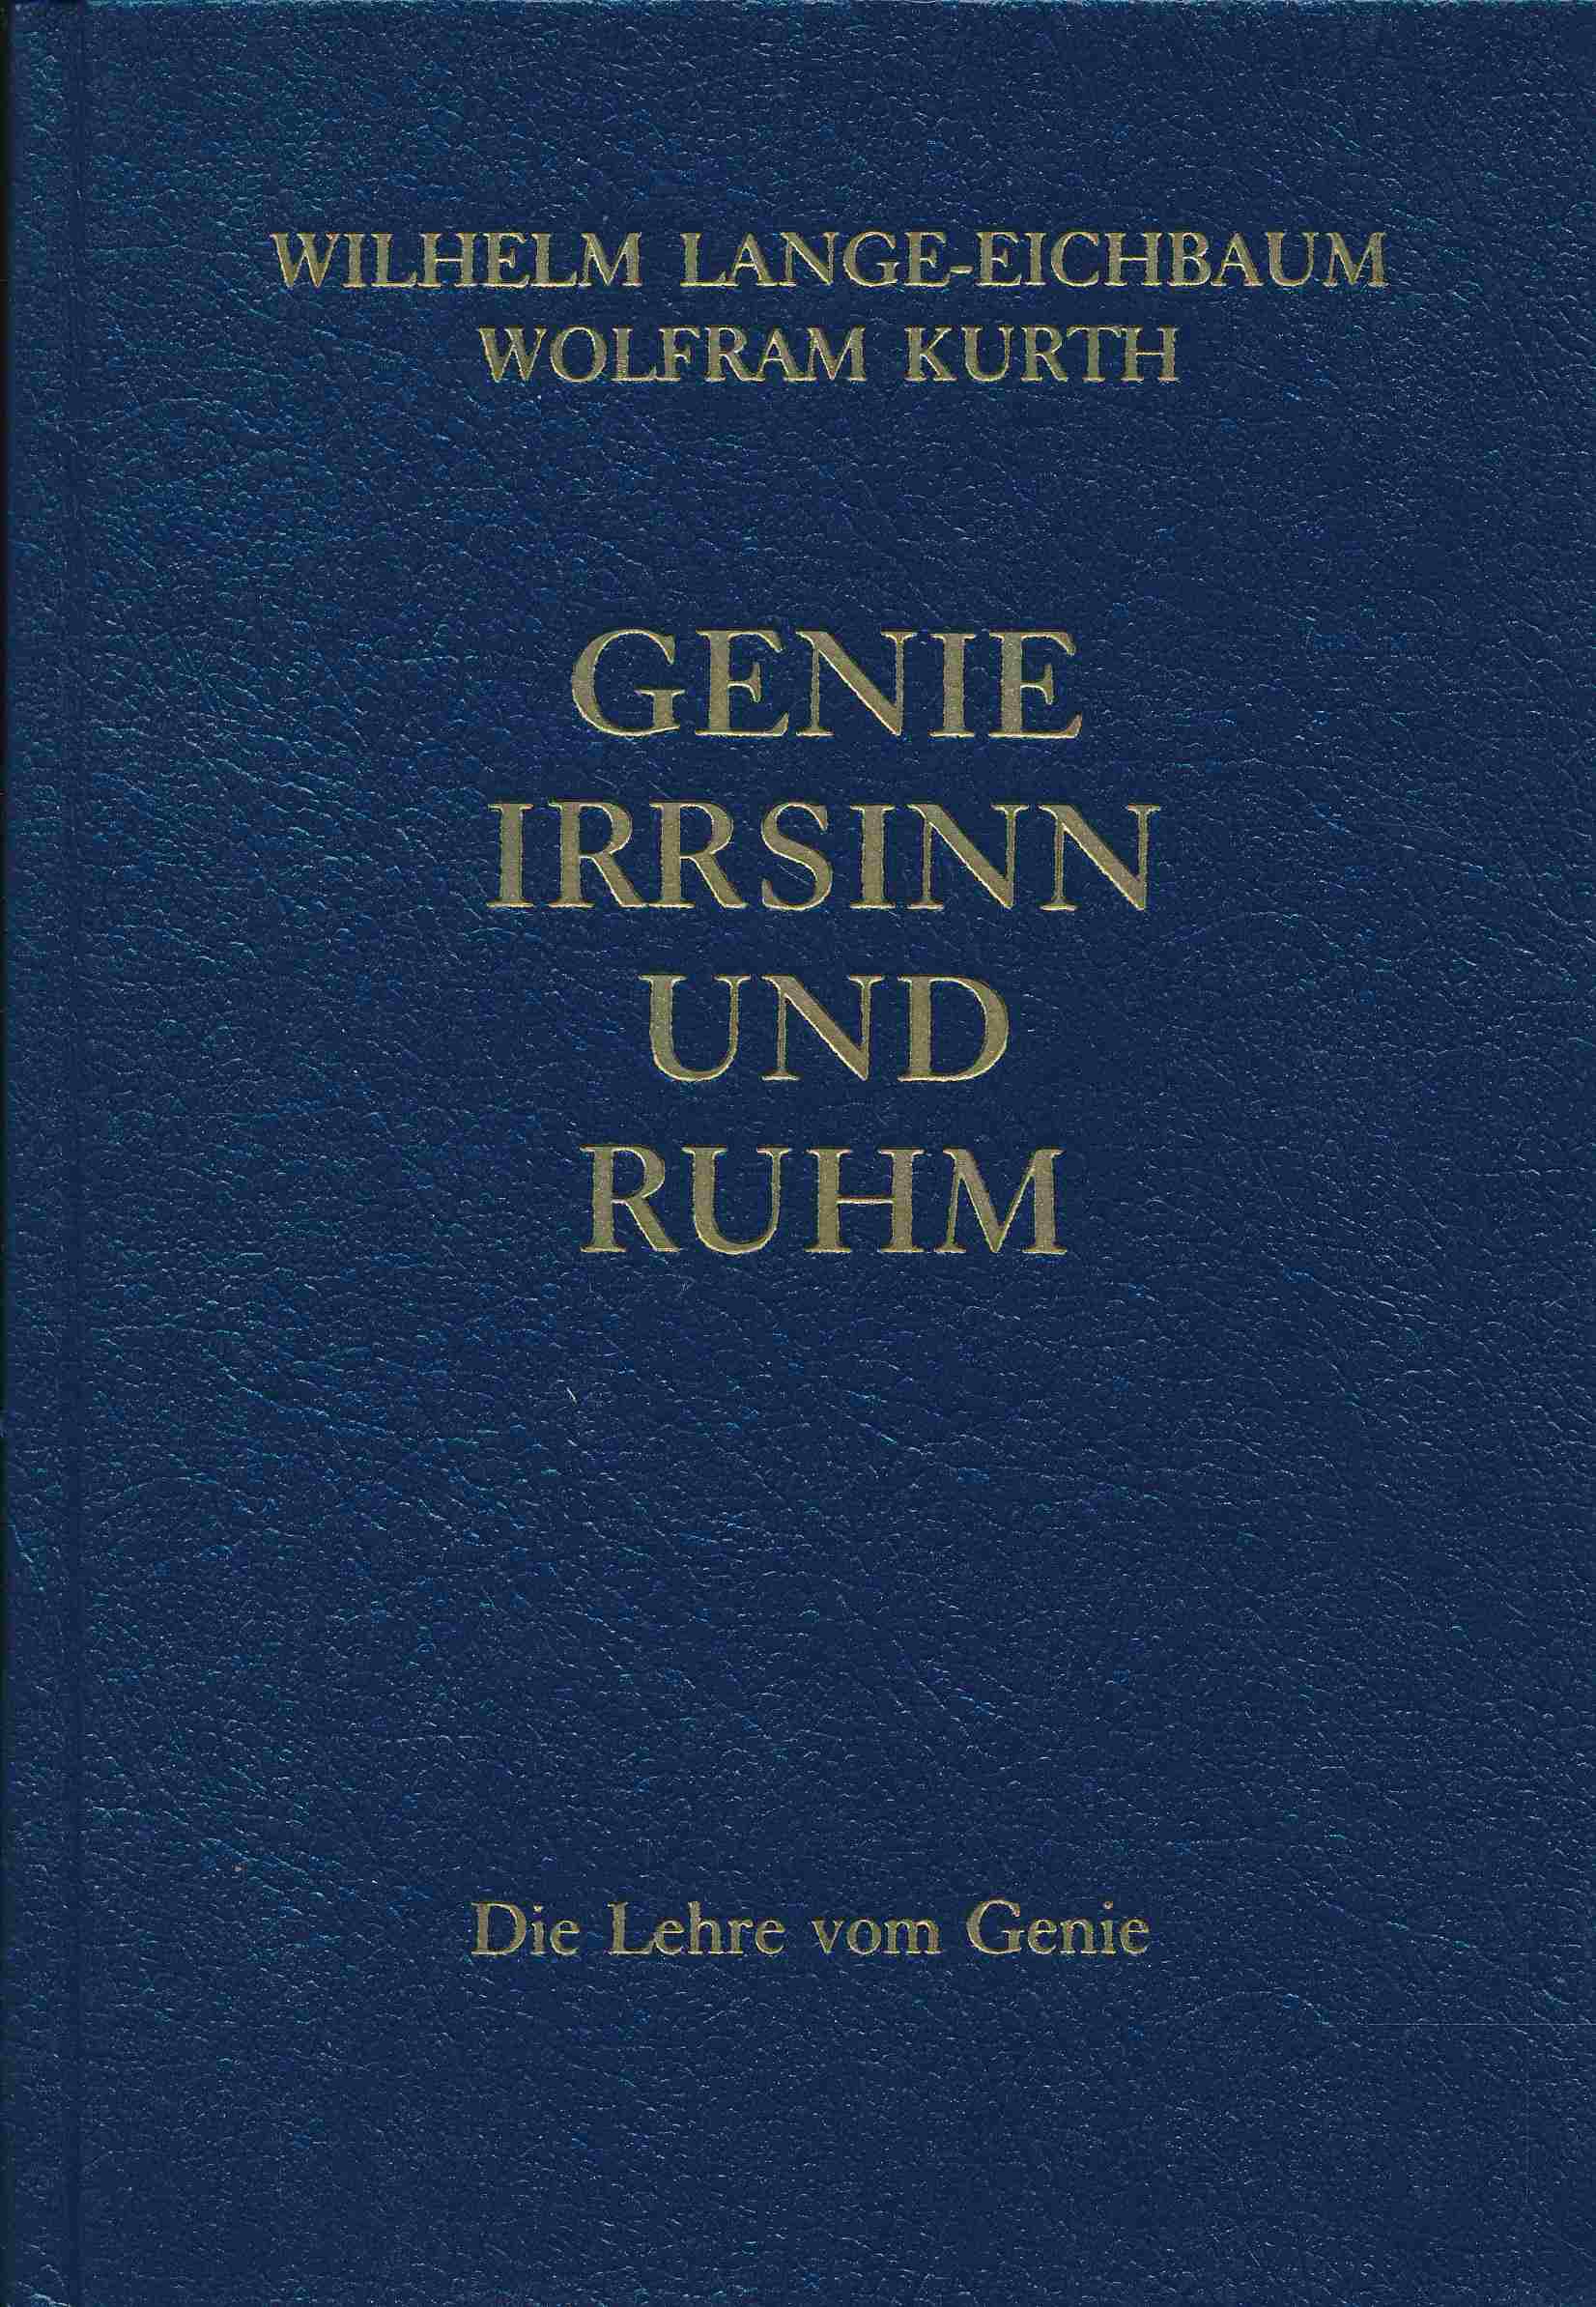 Genie, Irrsinn und Ruhm, in 11 Bdn., Bd.1, Die Lehre vom Genie. - Lange-Eichbaum, Wilhelm; Kurth, Wolfram